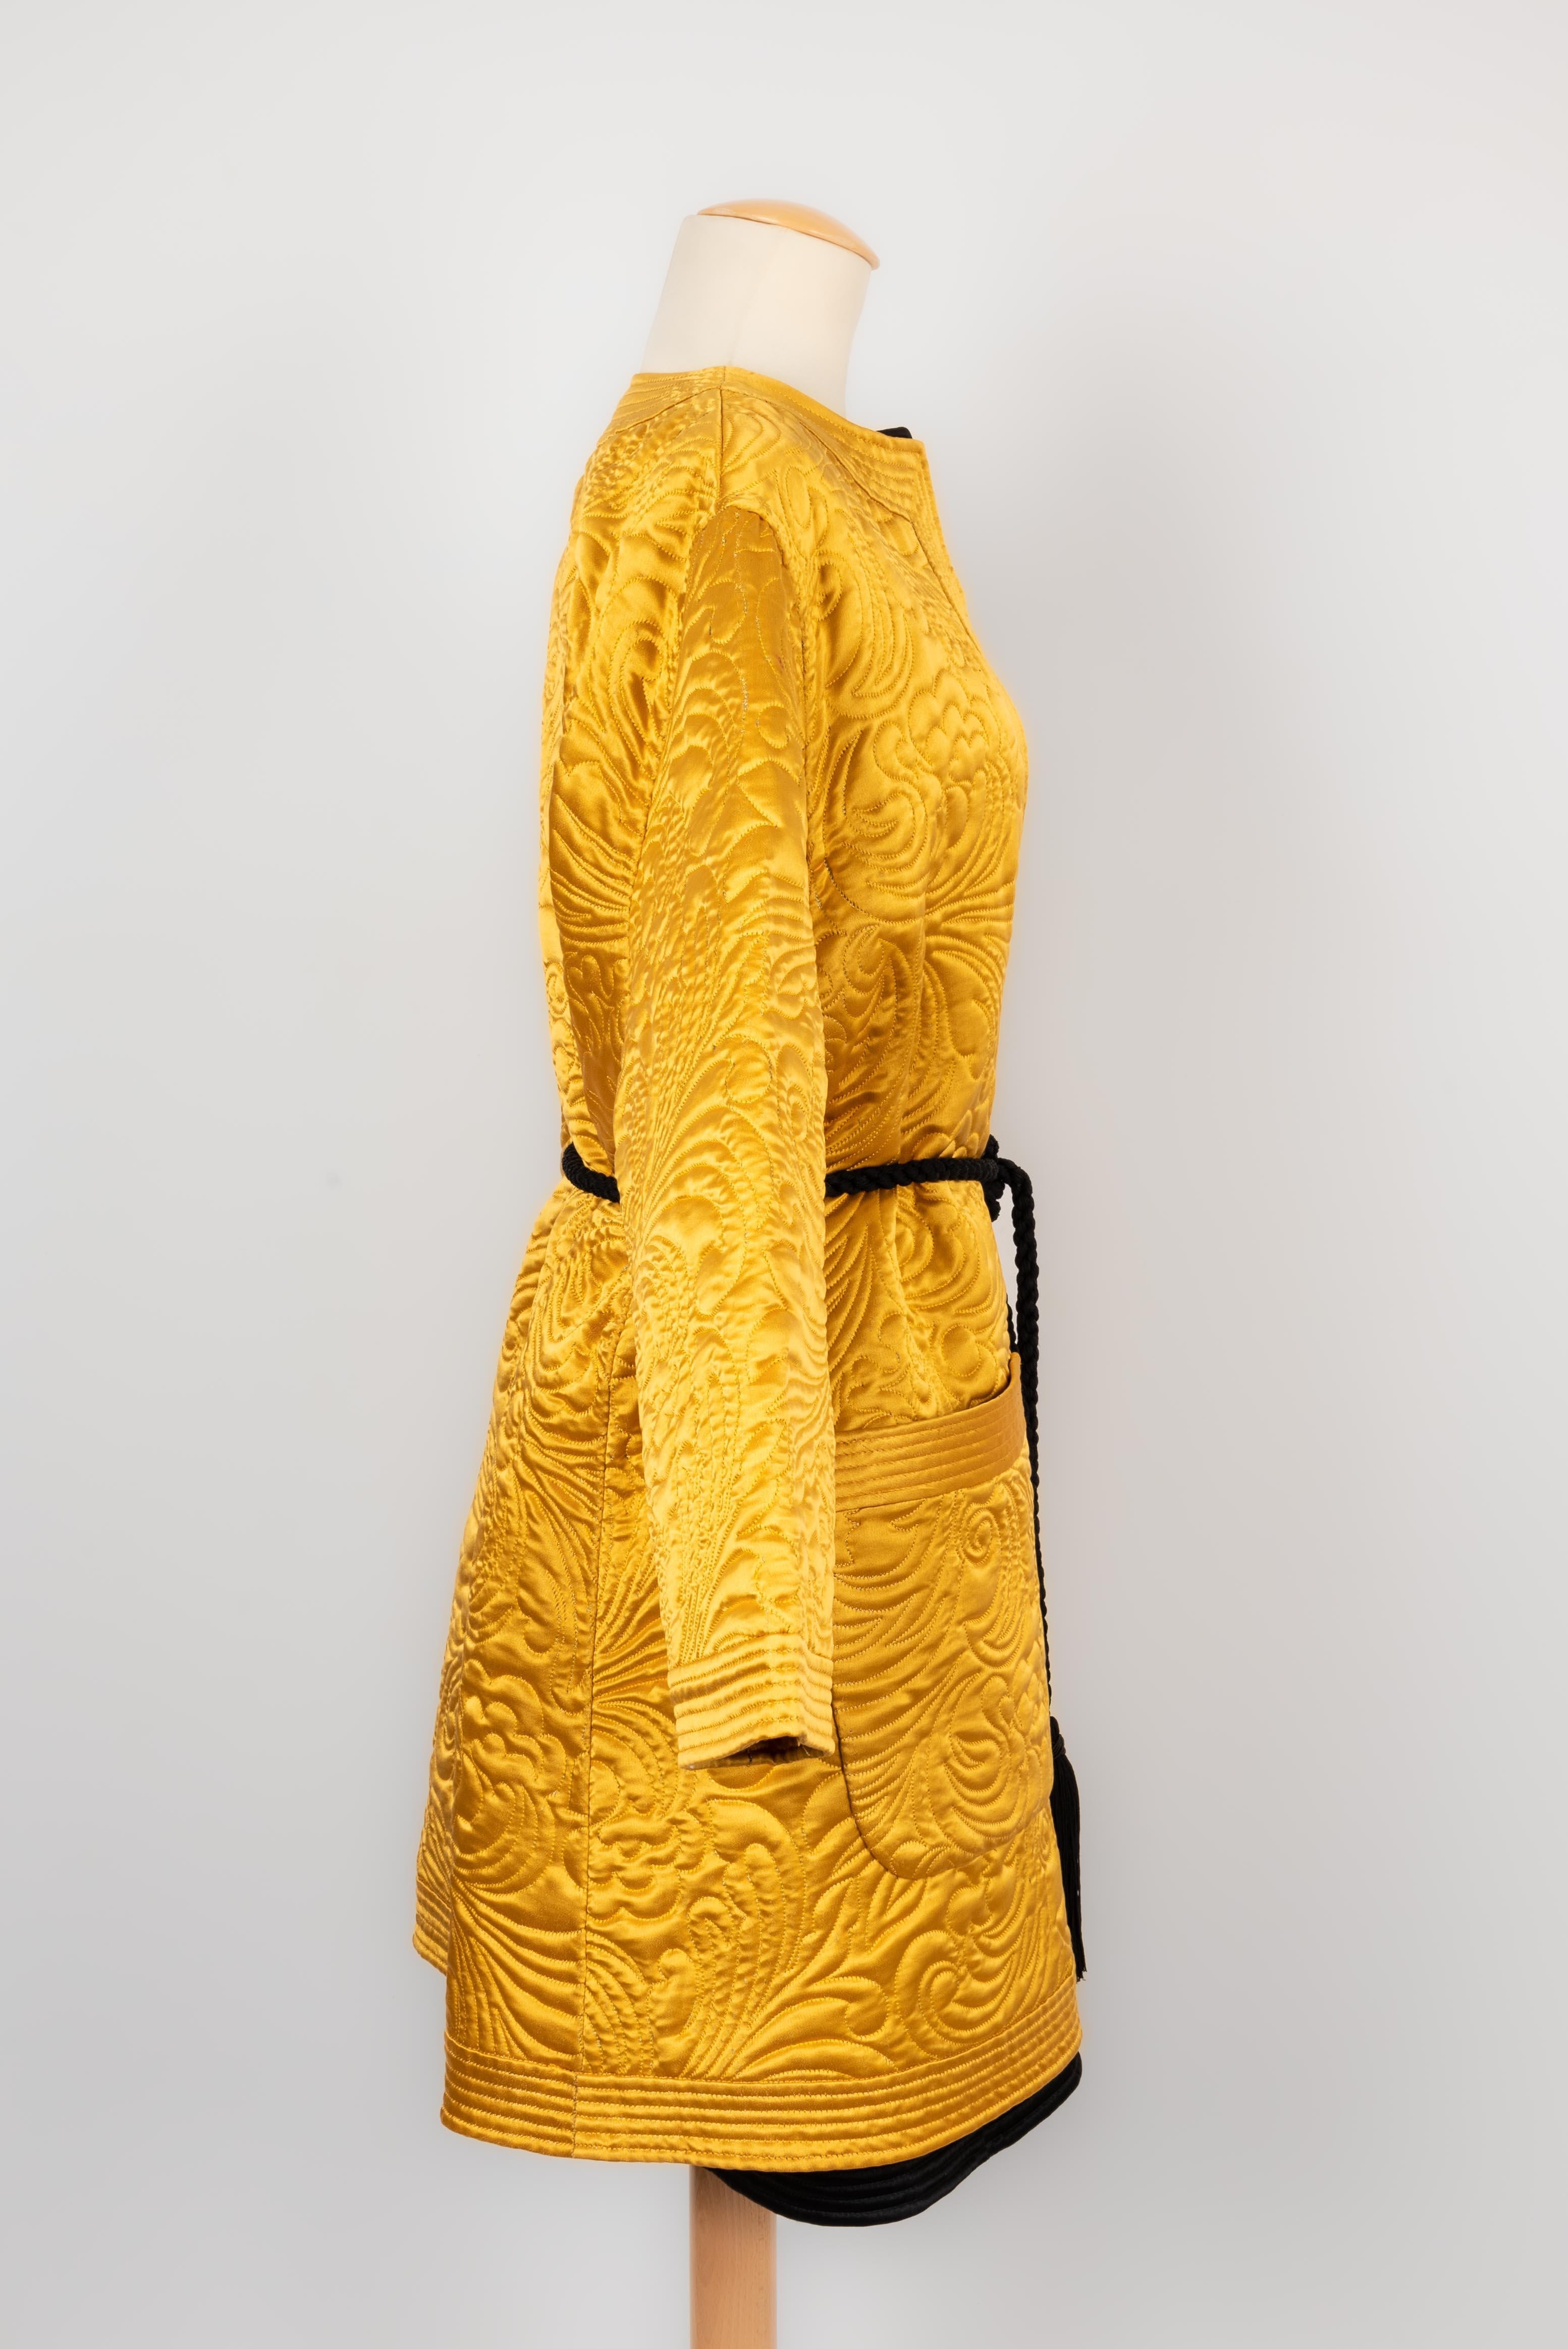 VALENTINO - Vestes doubles de style kimono en soie surpiquée.  Pièce de haute couture collection automne-hiver 1990/91. Pas de Label de taille ni de composition, elles vont à un 40FR.

Condit :
Très bon état.

Dimensions :
Veste jaune : Largeur des